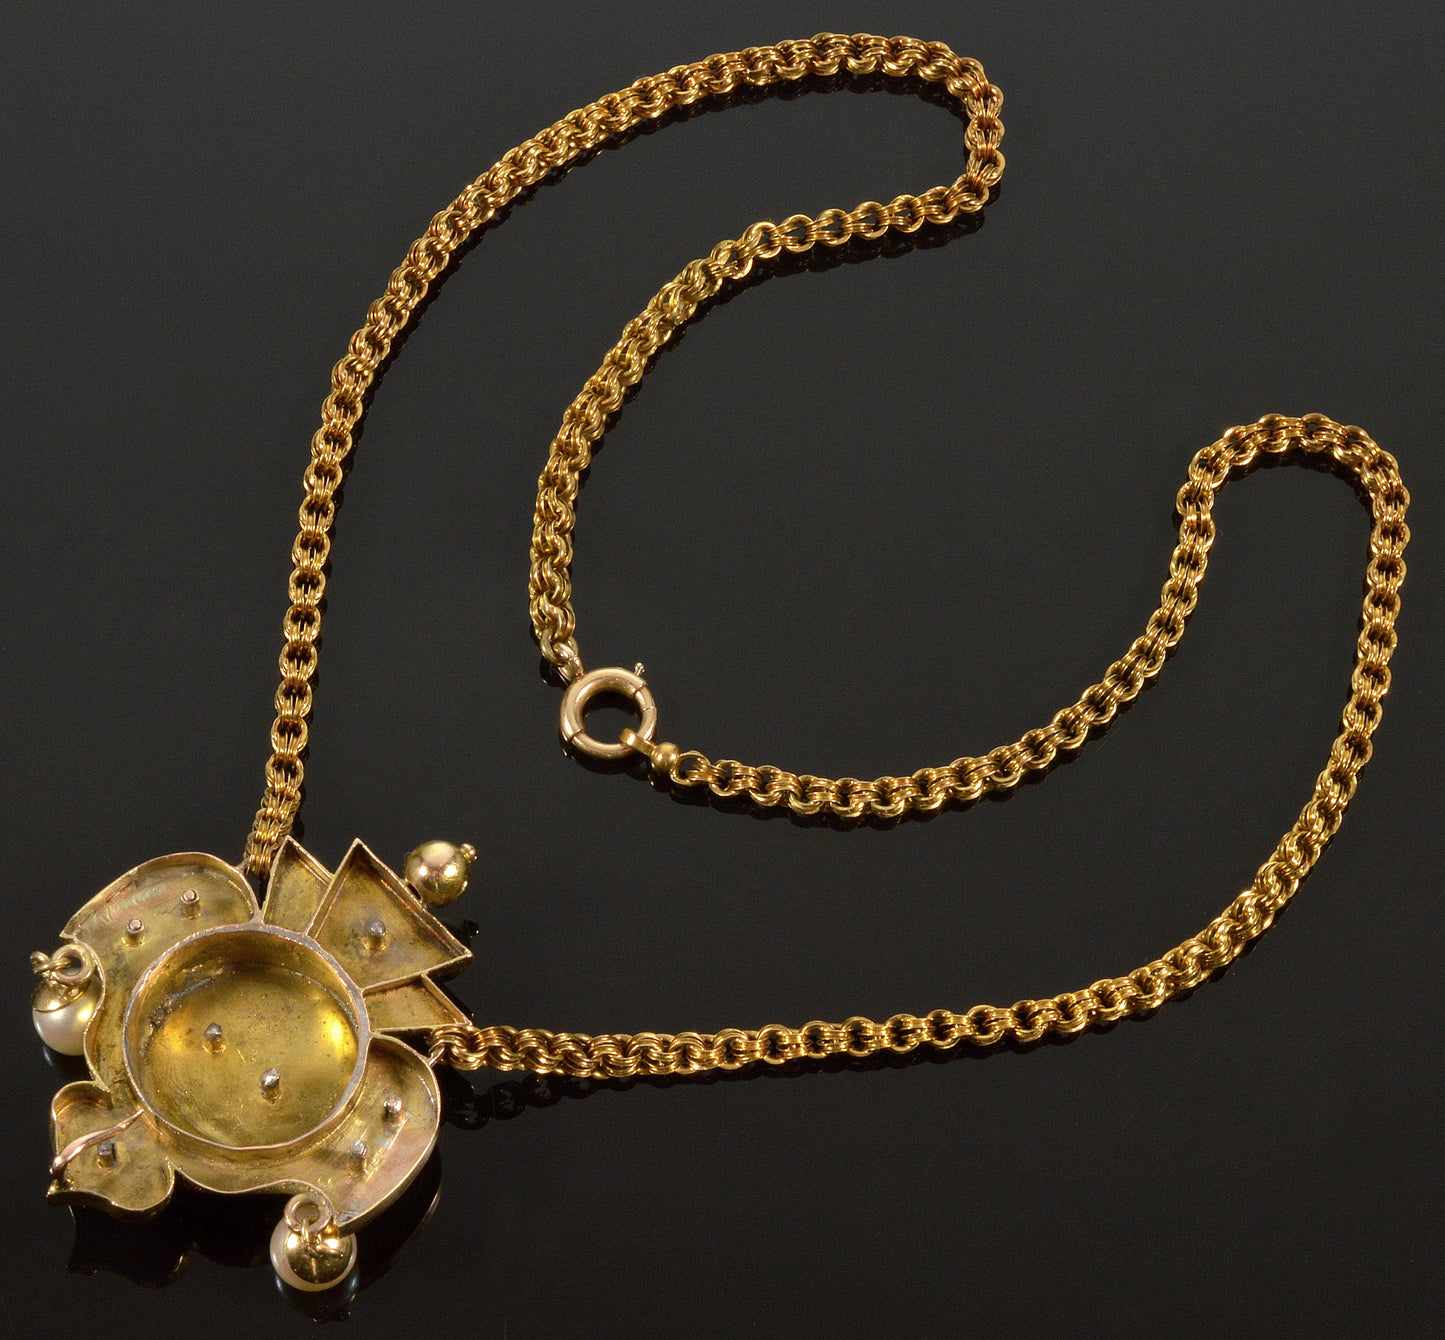 Antique Victorian Etruscan Revival 14K Gold Pendant Chain Necklace C.1860